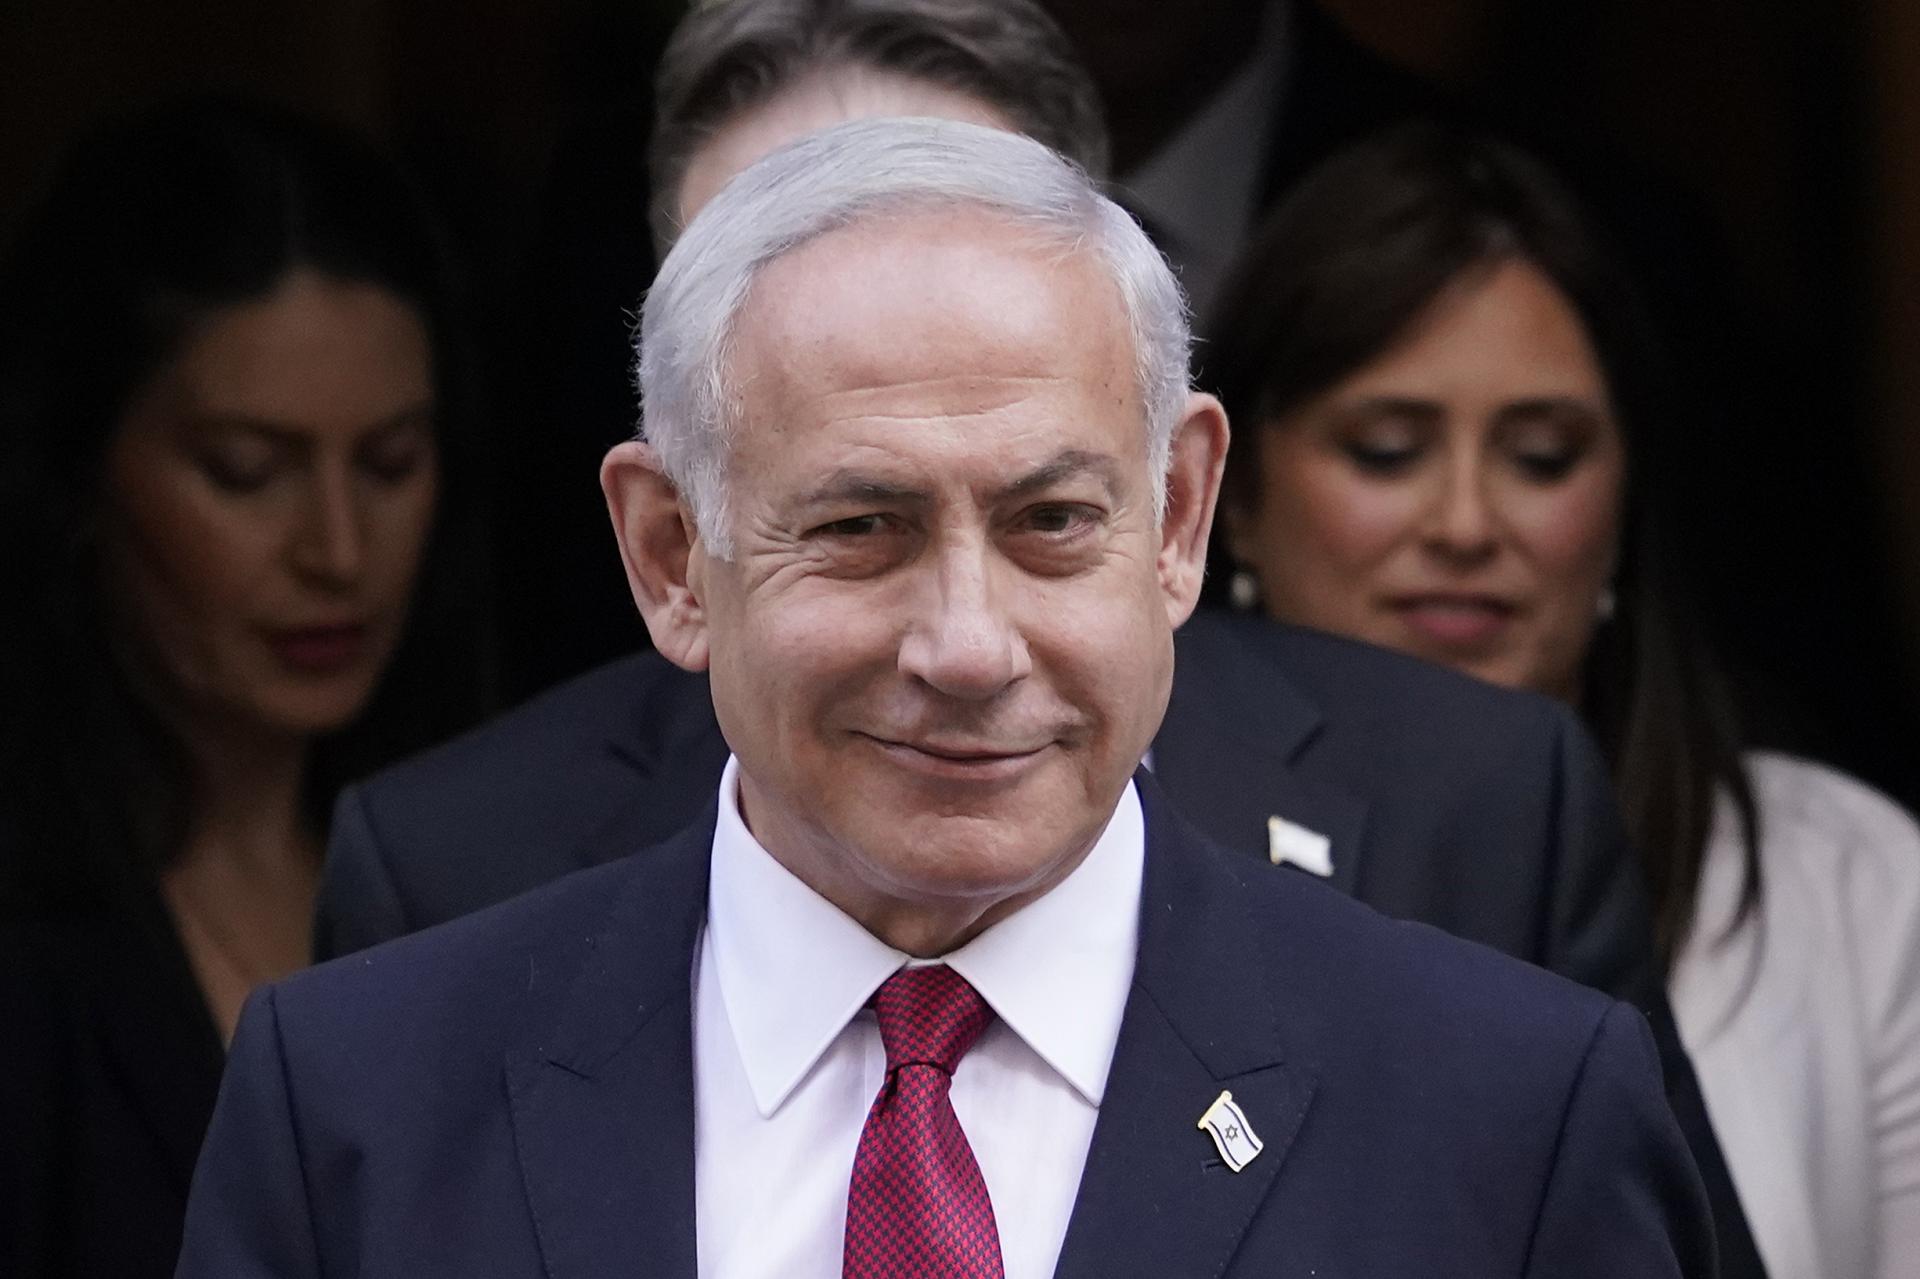 Izrael sa snaží upokojiť situáciu, povedal Netanjahu po stretoch pri mešite. Desiatky ľudí sú zranené